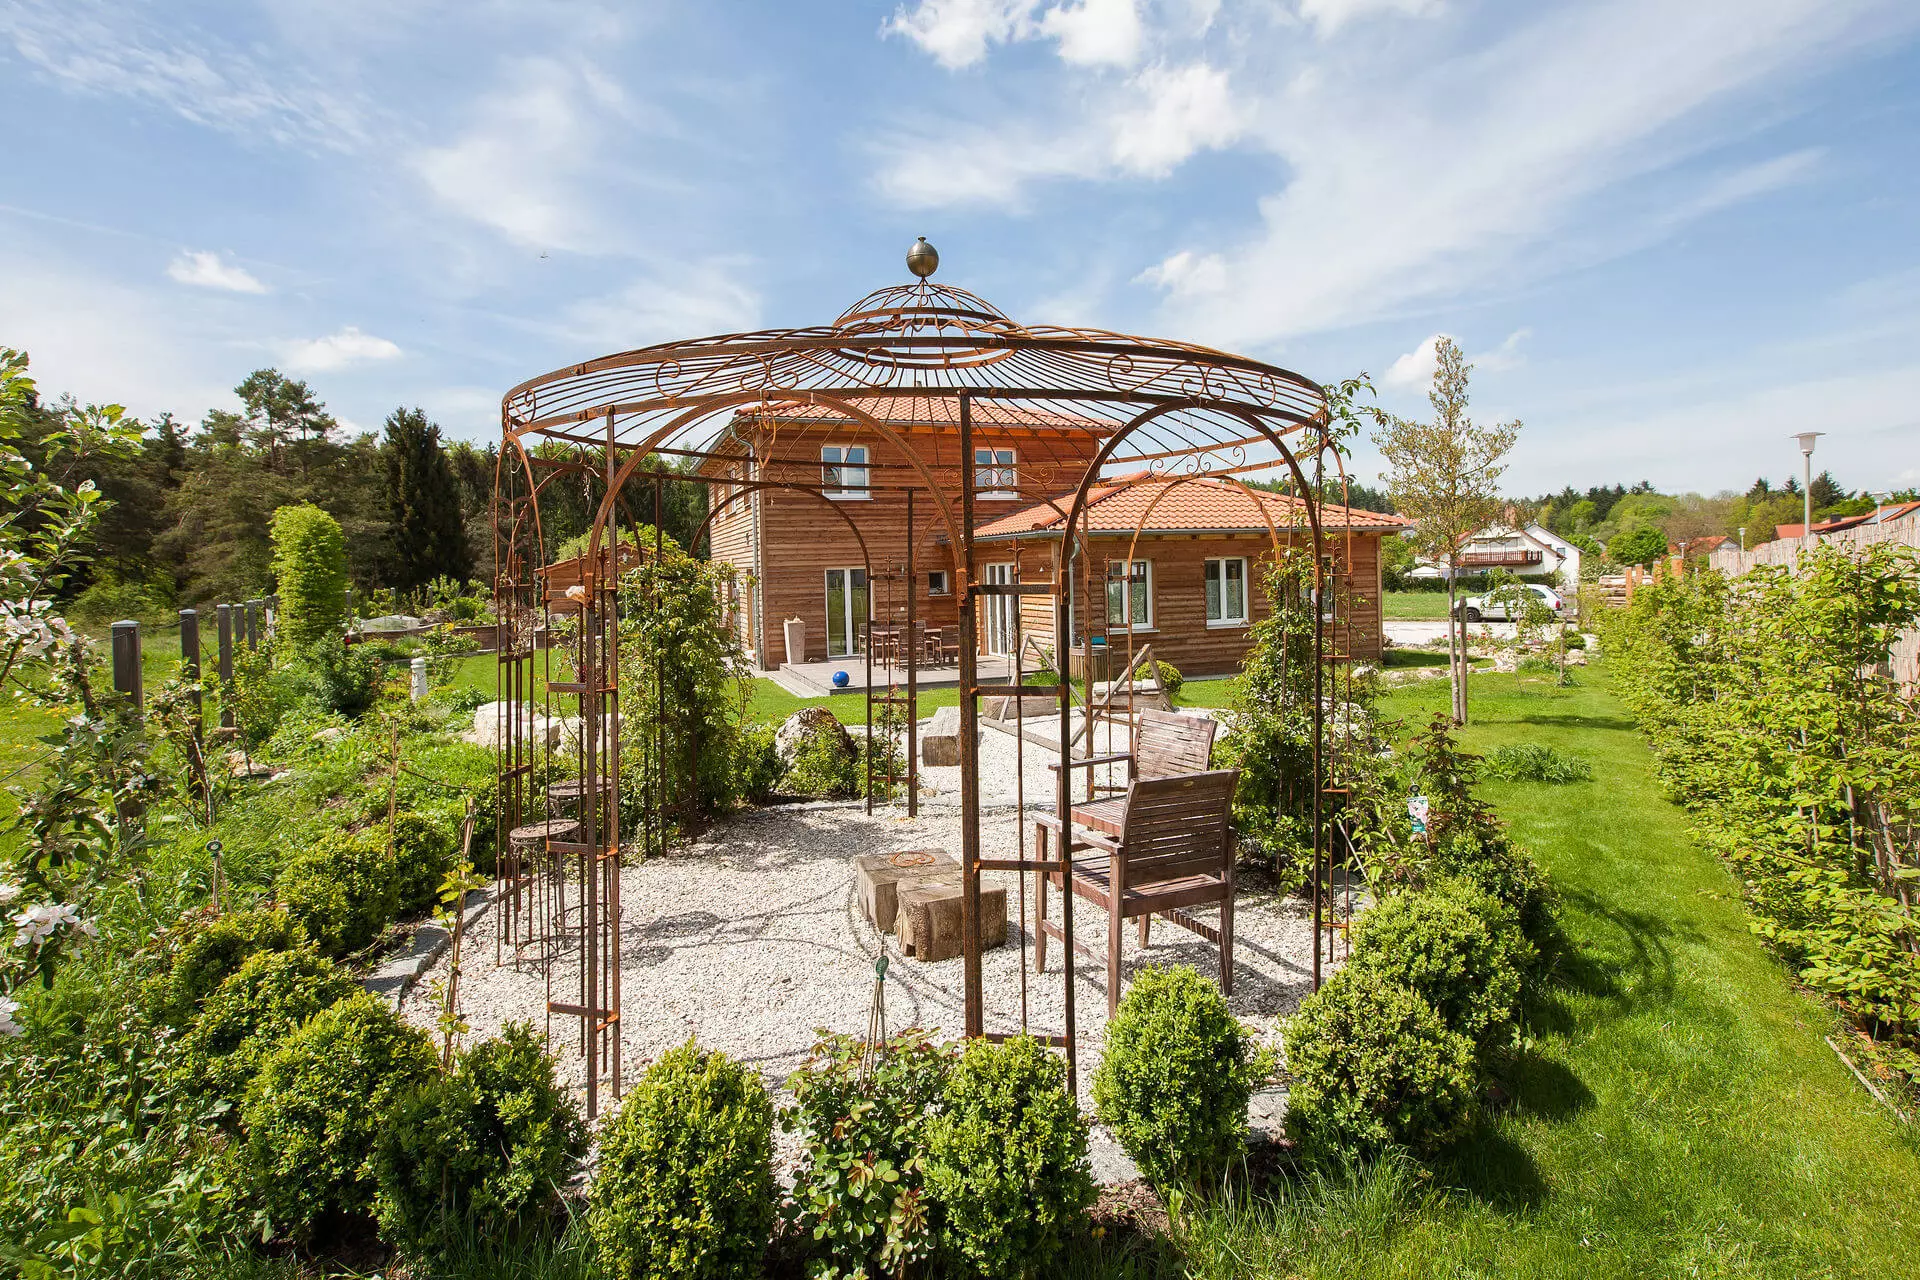 Runder Gartenpavillon Florenz, unbeschichtete Ausführung, Messingkugel als Abschluss